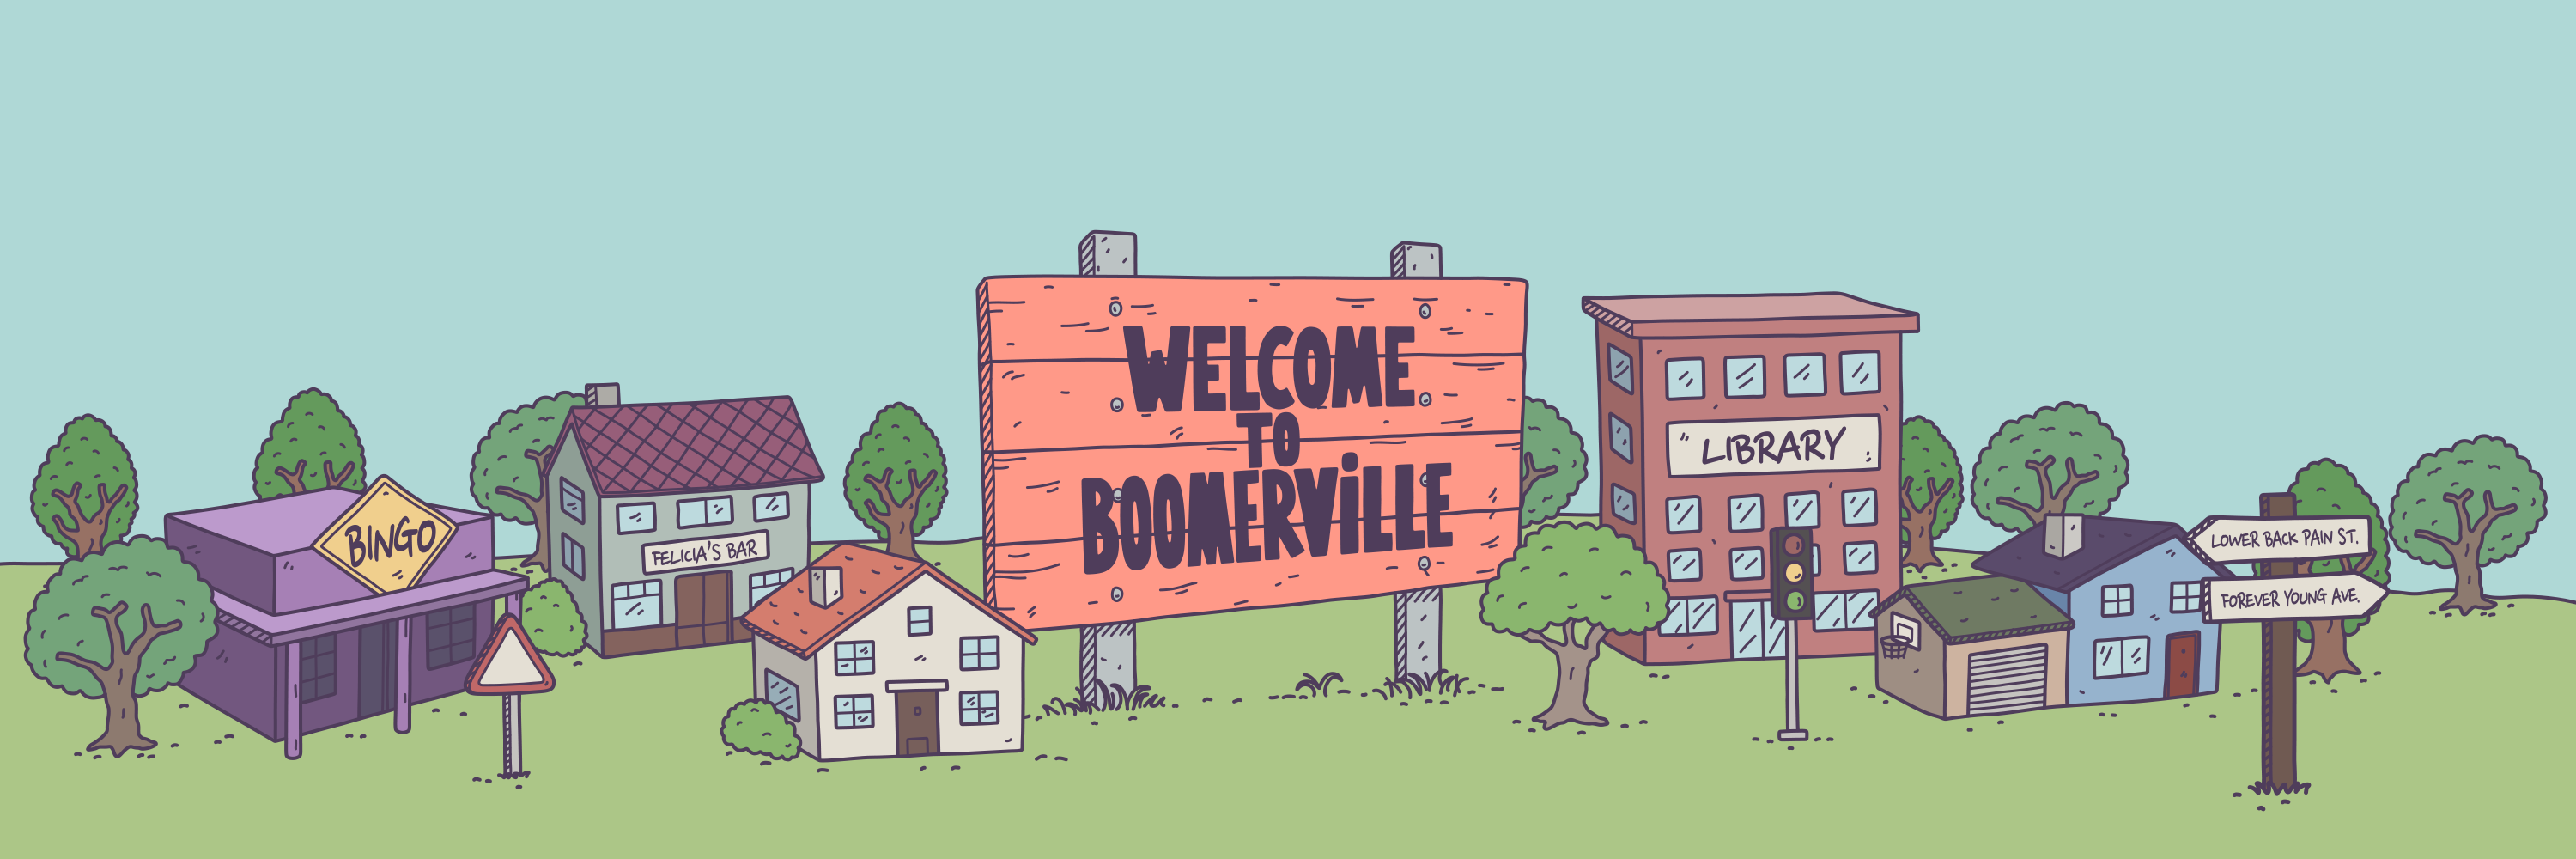 Boomerville